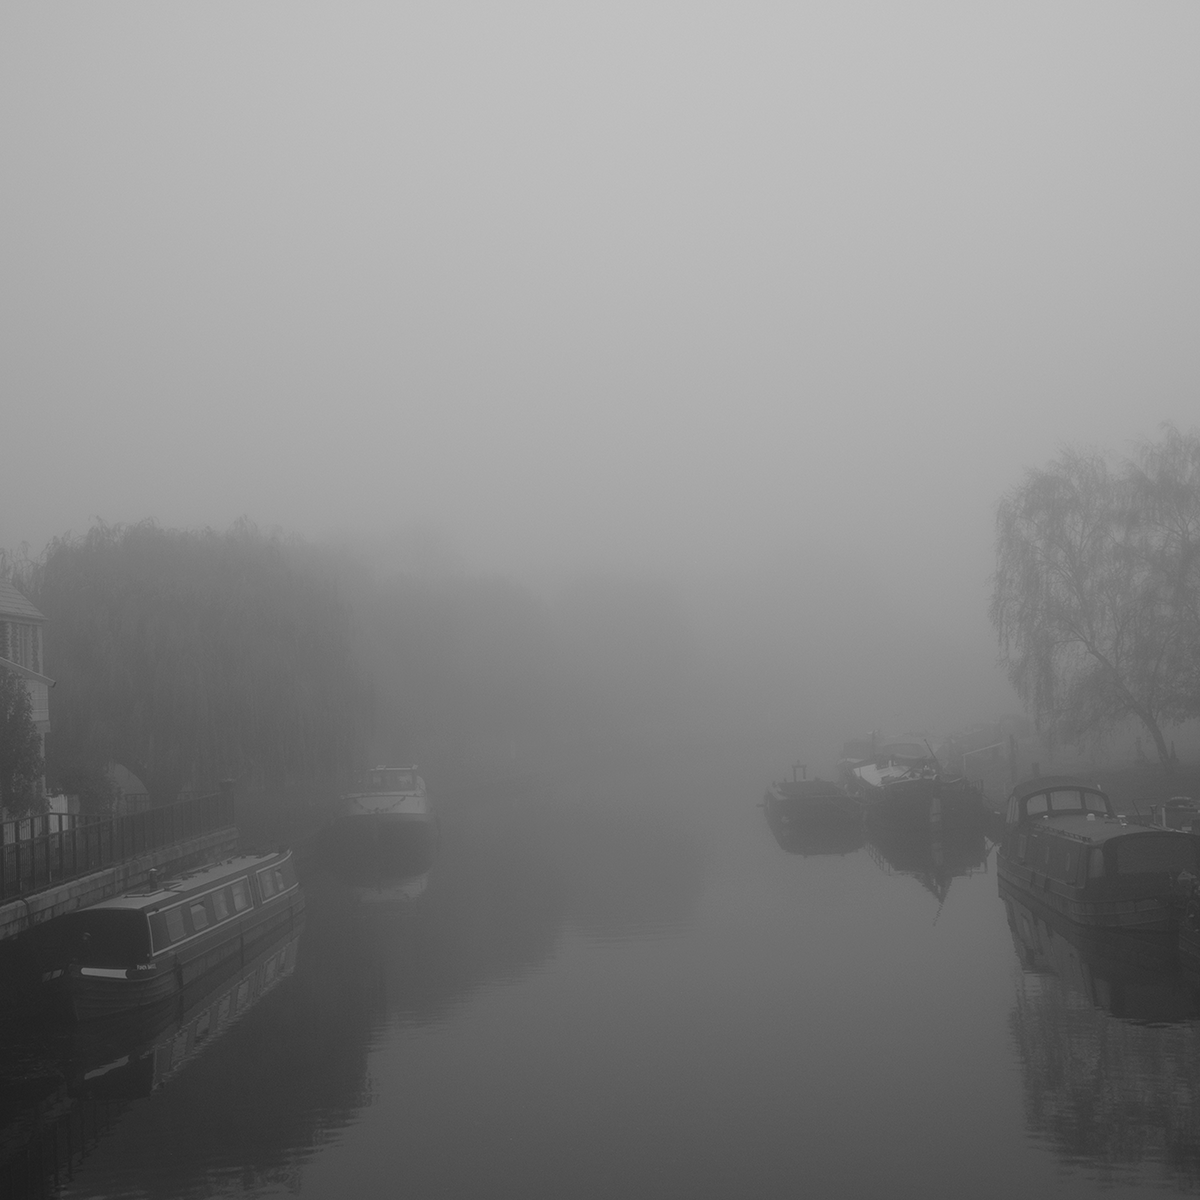 Mist in November - River link image